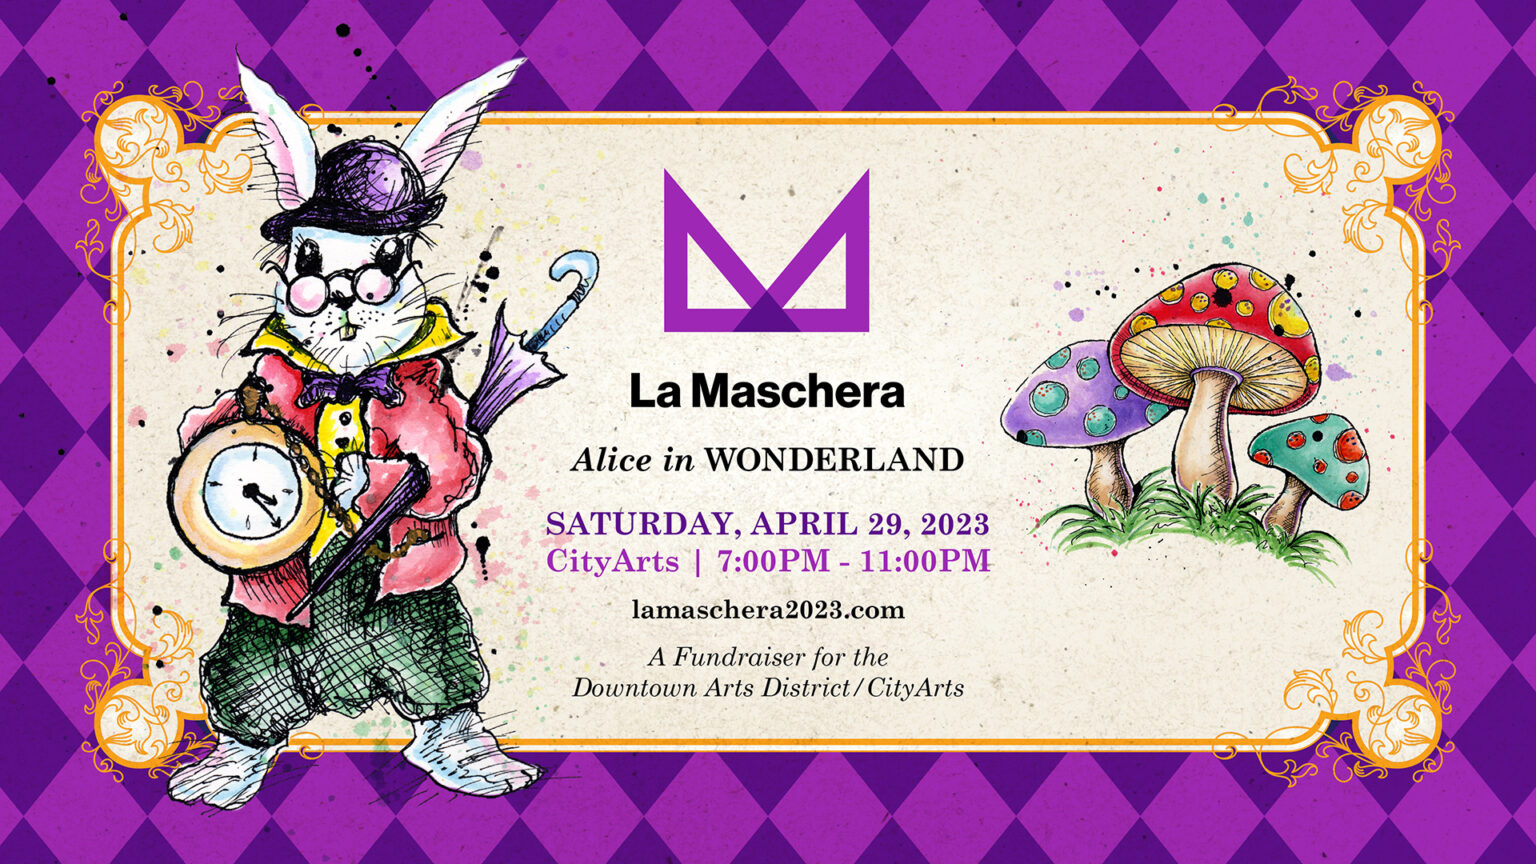 La Maschera Alice in Wonderland FB event cover concept v6